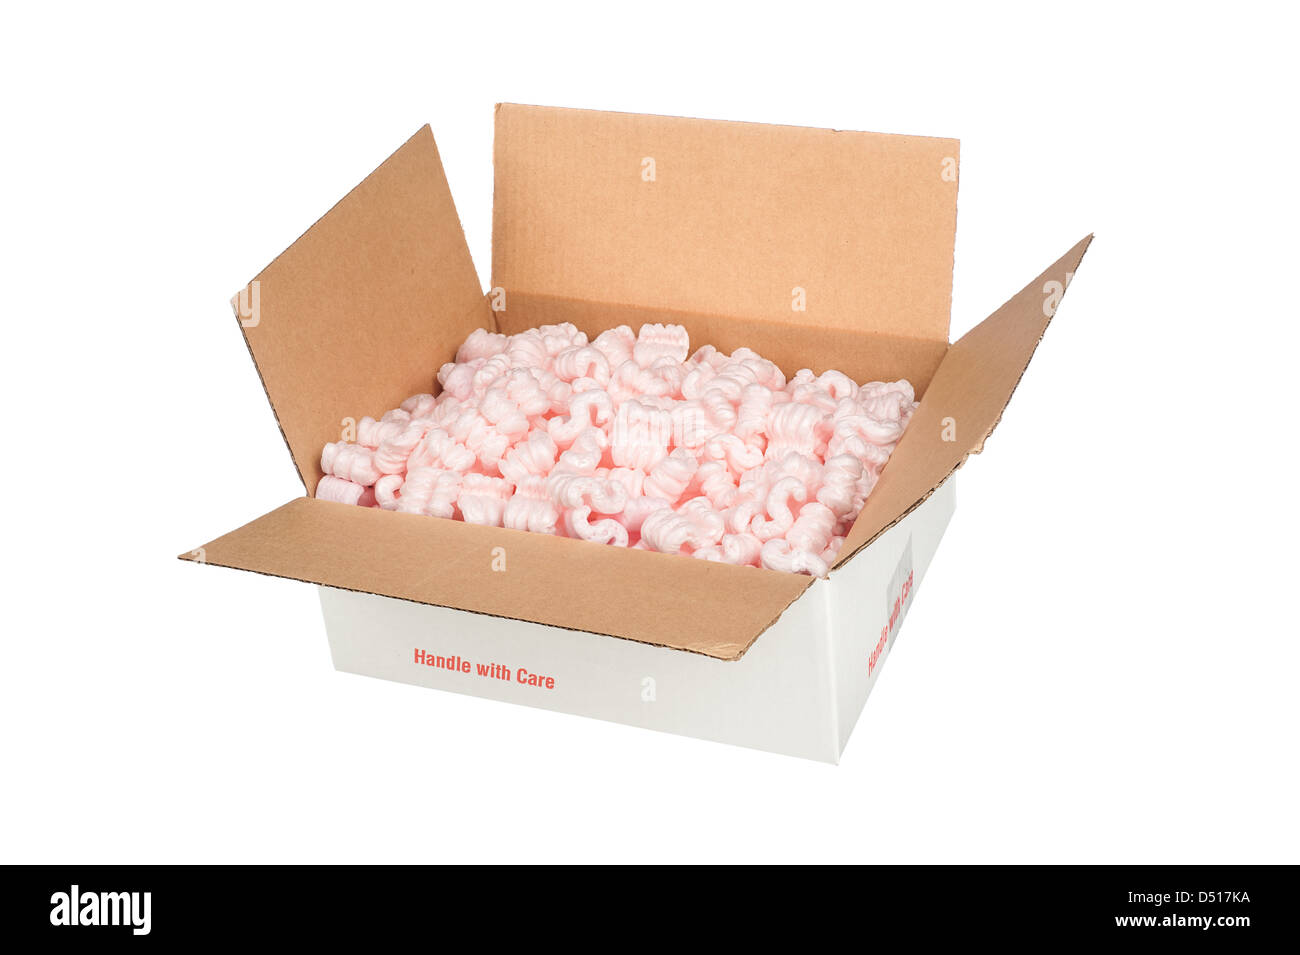 Eine weiße Schachtel aus Wellpappe gefüllt mit rosa Schutzverpackung Erdnüsse, die Polsterung für das Objekt dem Versand bietet. Stockfoto